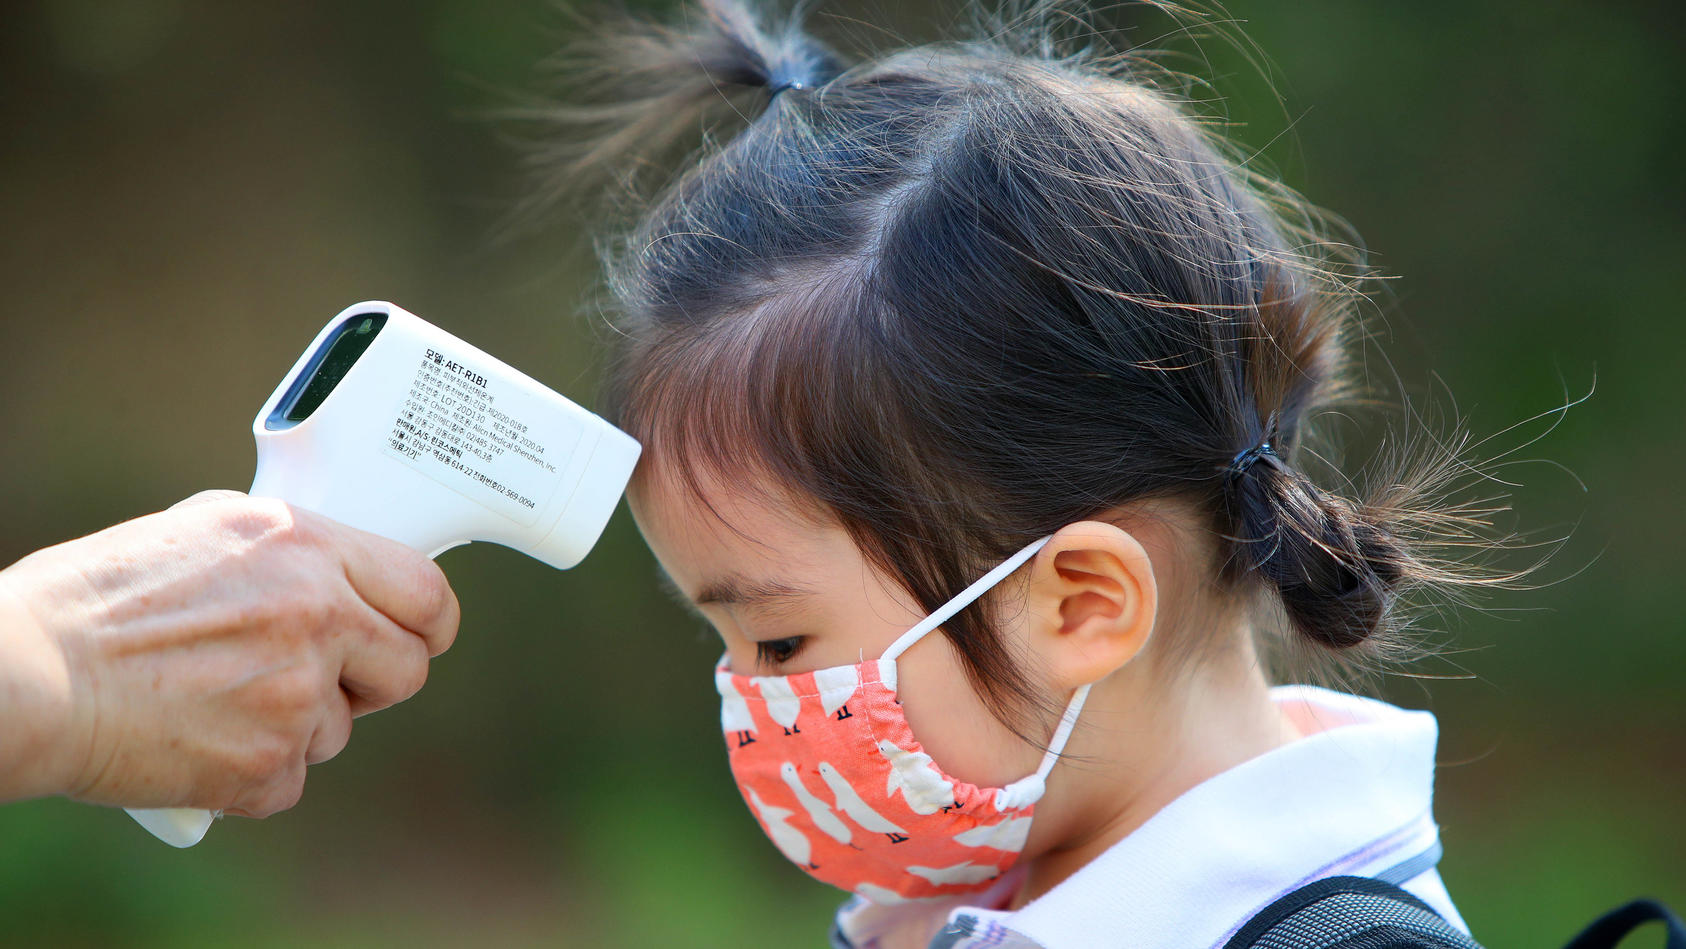 22.06.2020, Südkorea, Daegu: Einem Mädchen wird am ersten Tag der Wiedereröffnung einer Kindertagesstätte die Temperatur gemessen, nachdem die Kindertagesstätten der Region aufgrund der Corona-Pandemie 122 Tage geschlossen waren. Foto: -/YNA/dpa +++ 